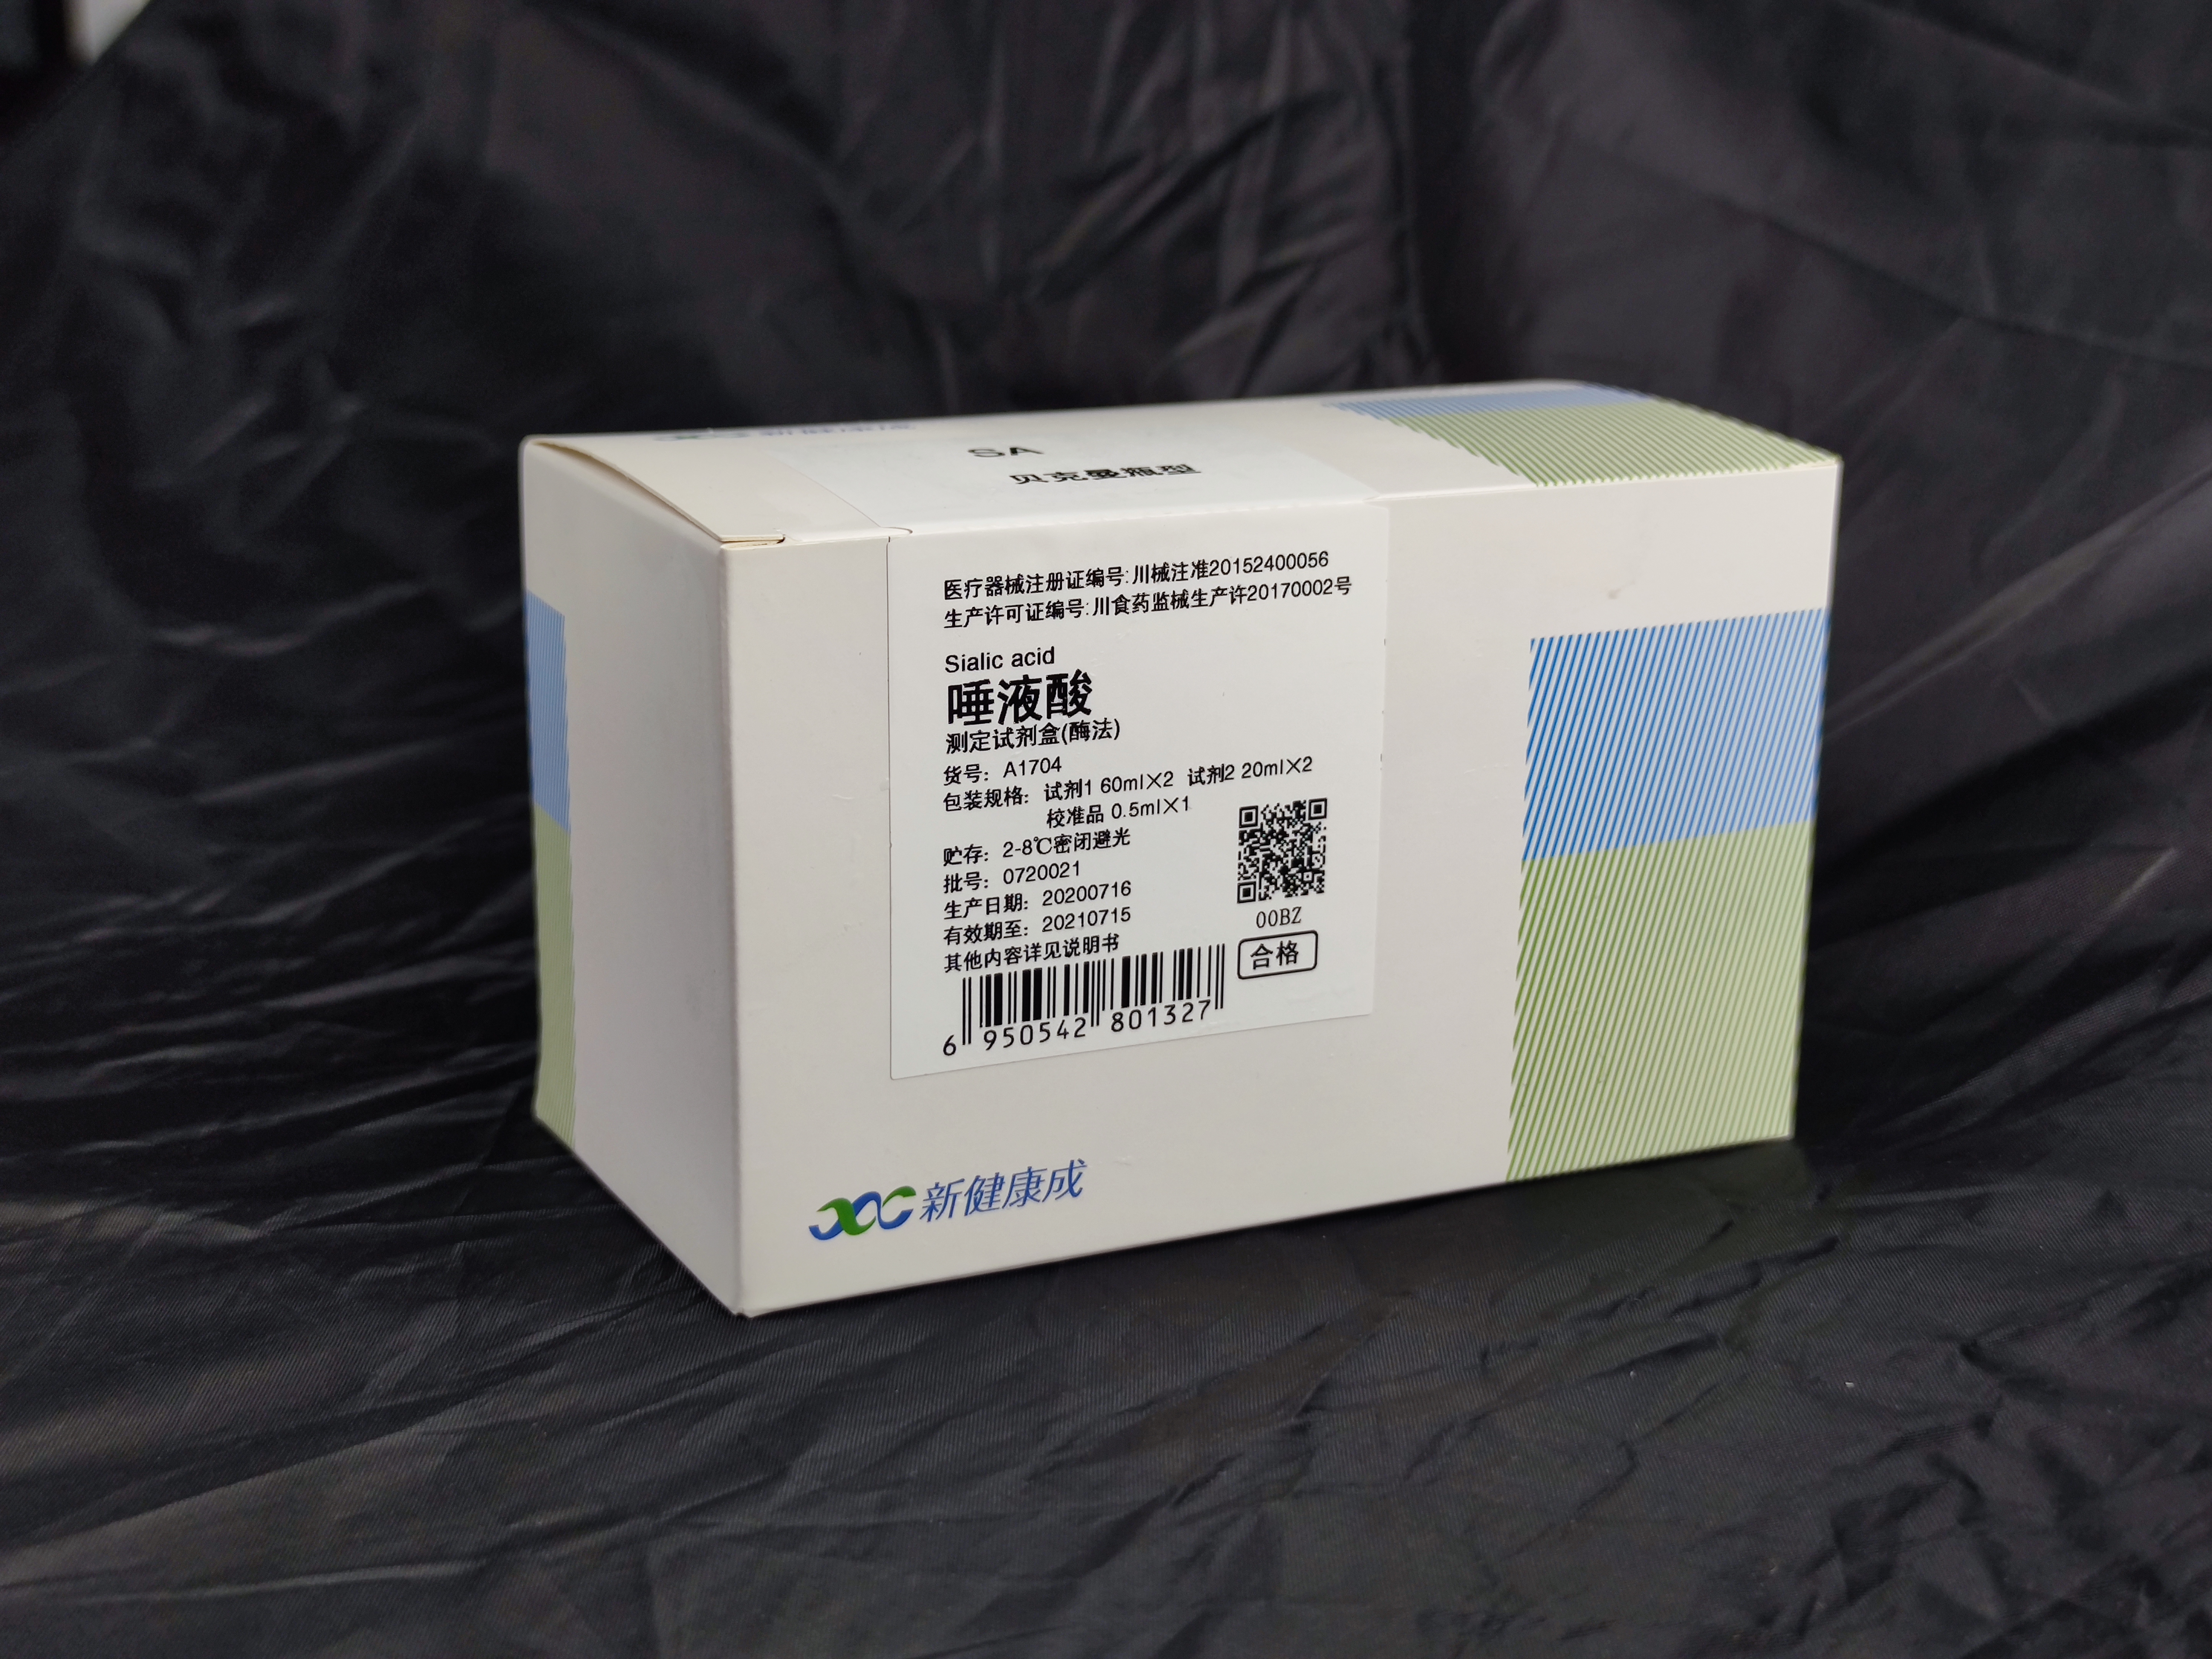 【新健康成】唾液酸测定试剂盒(酶法)